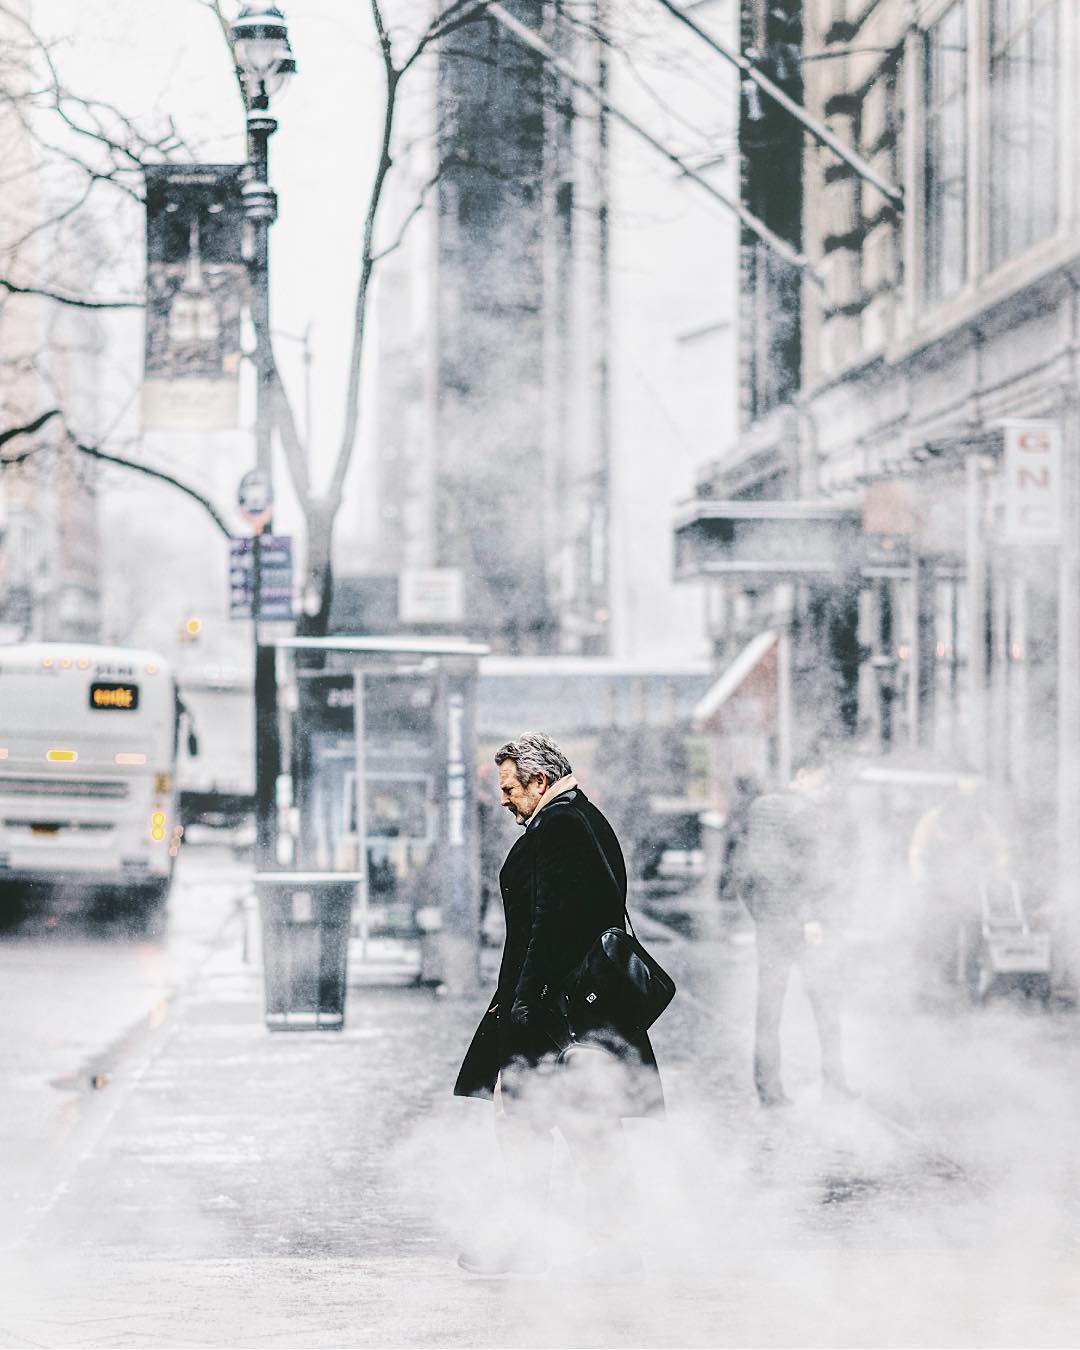 Потрясающие уличные снимки Нью-Йорка от Джейсона Ли